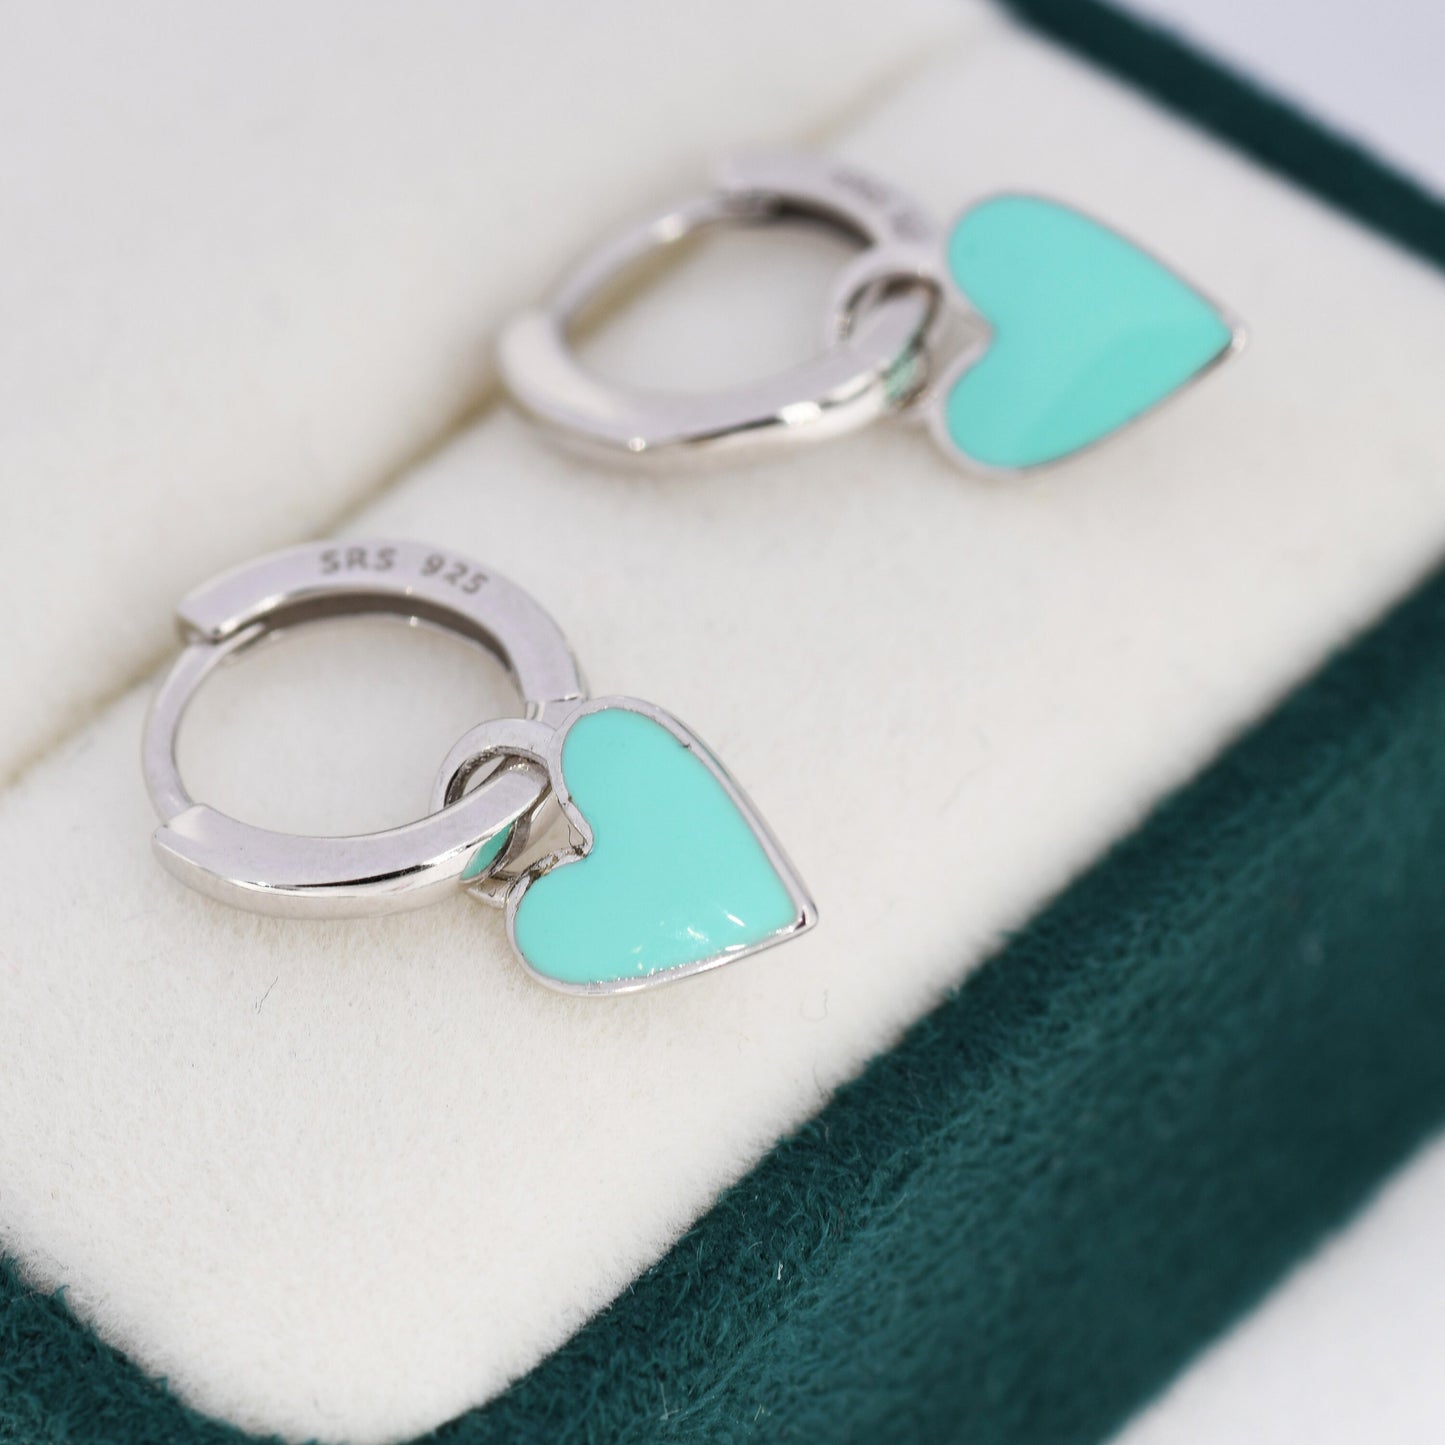 Teal Blue Enamel Heart Earrings in Sterling Silver, Detachable Heart Charm Dangle Hoop Earrings, Interchangeable